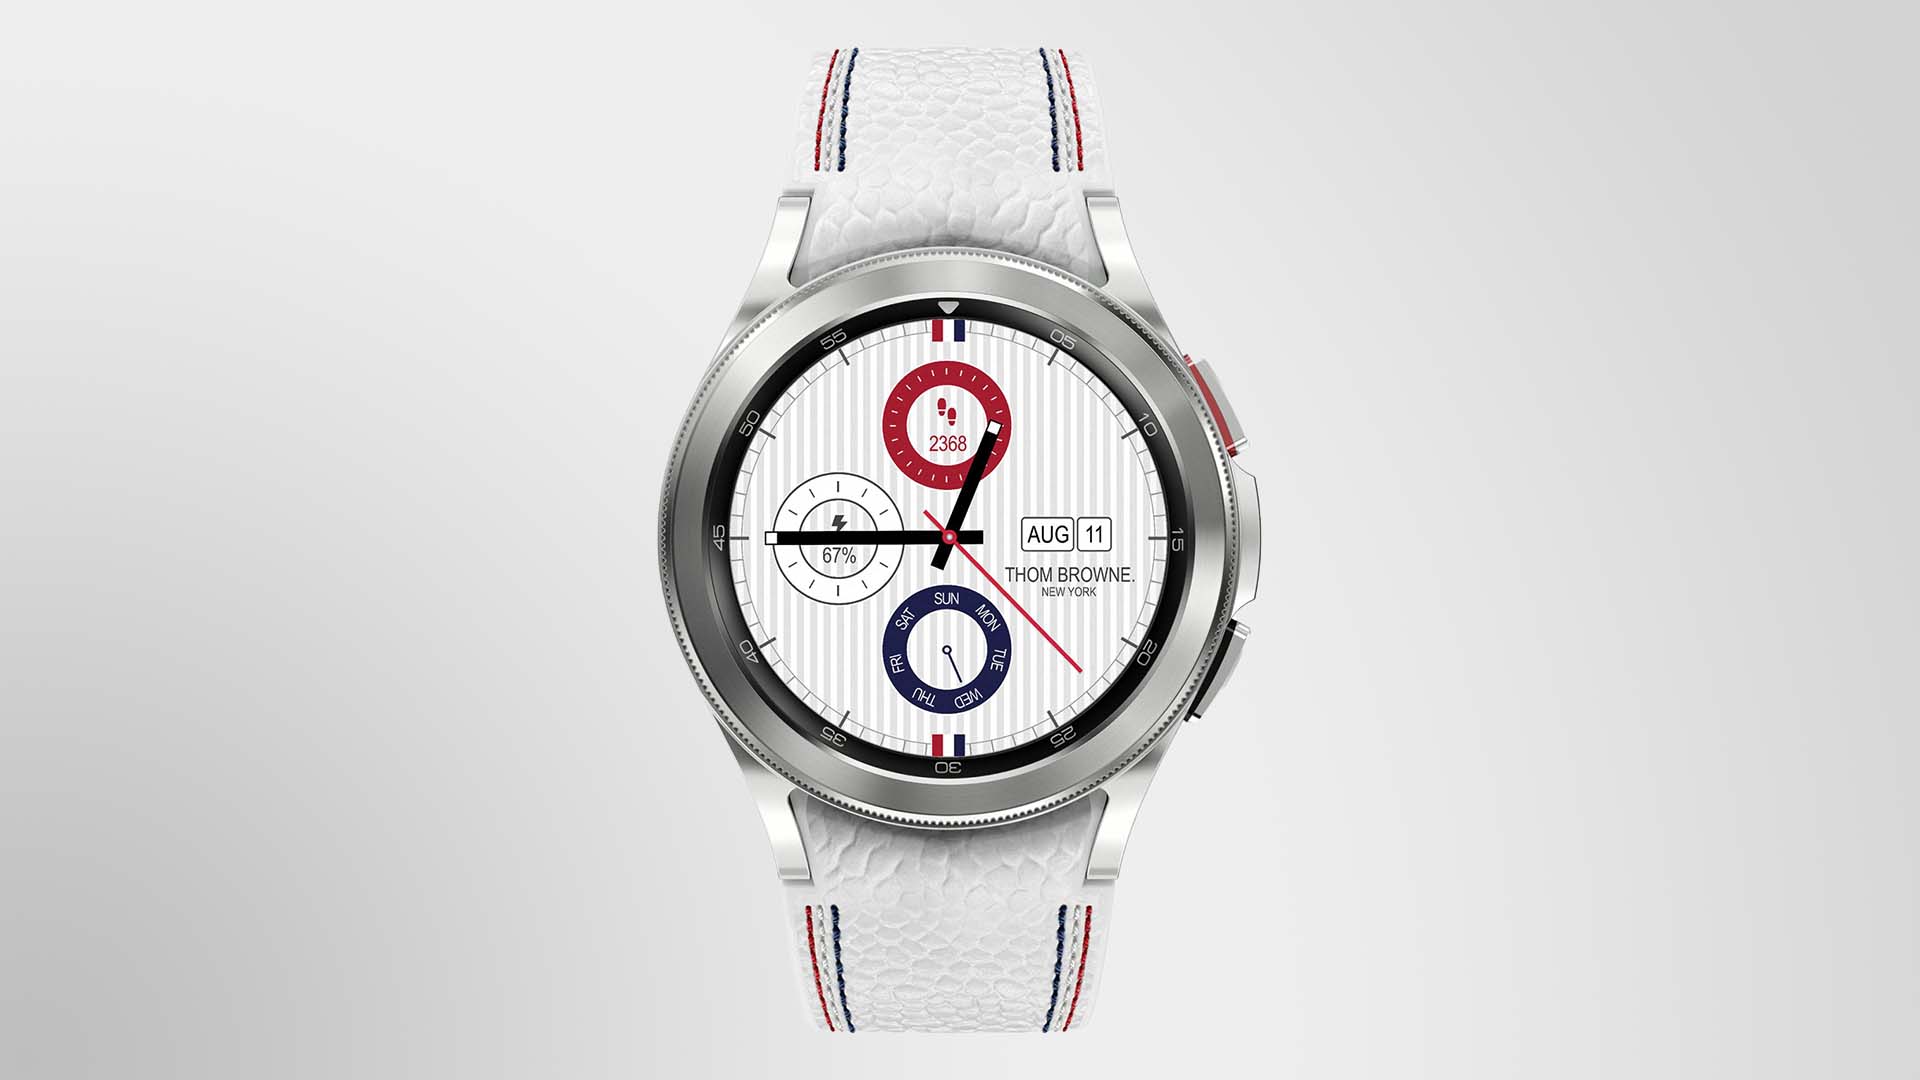 Samsung Galaxy Watch 4 Classic Thom Browne Edition: specjalna wersja smartwatcha za 800 dolarów stworzona we współpracy z amerykańskim projektantem mody